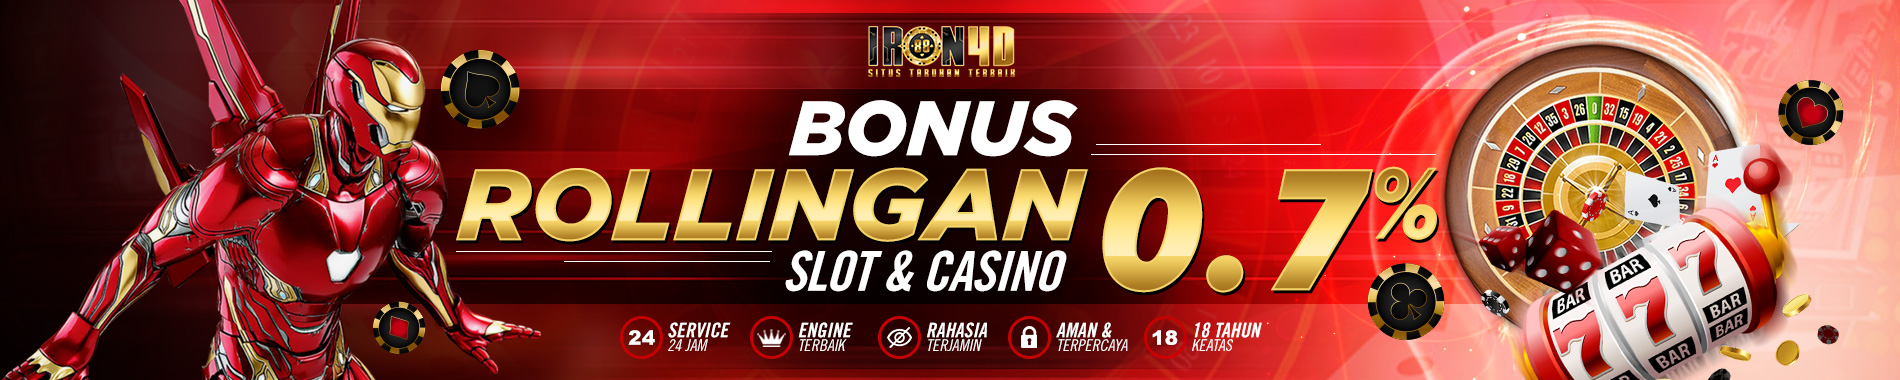 Bonus Rolingan Mingguan slot dan casino 0.7%